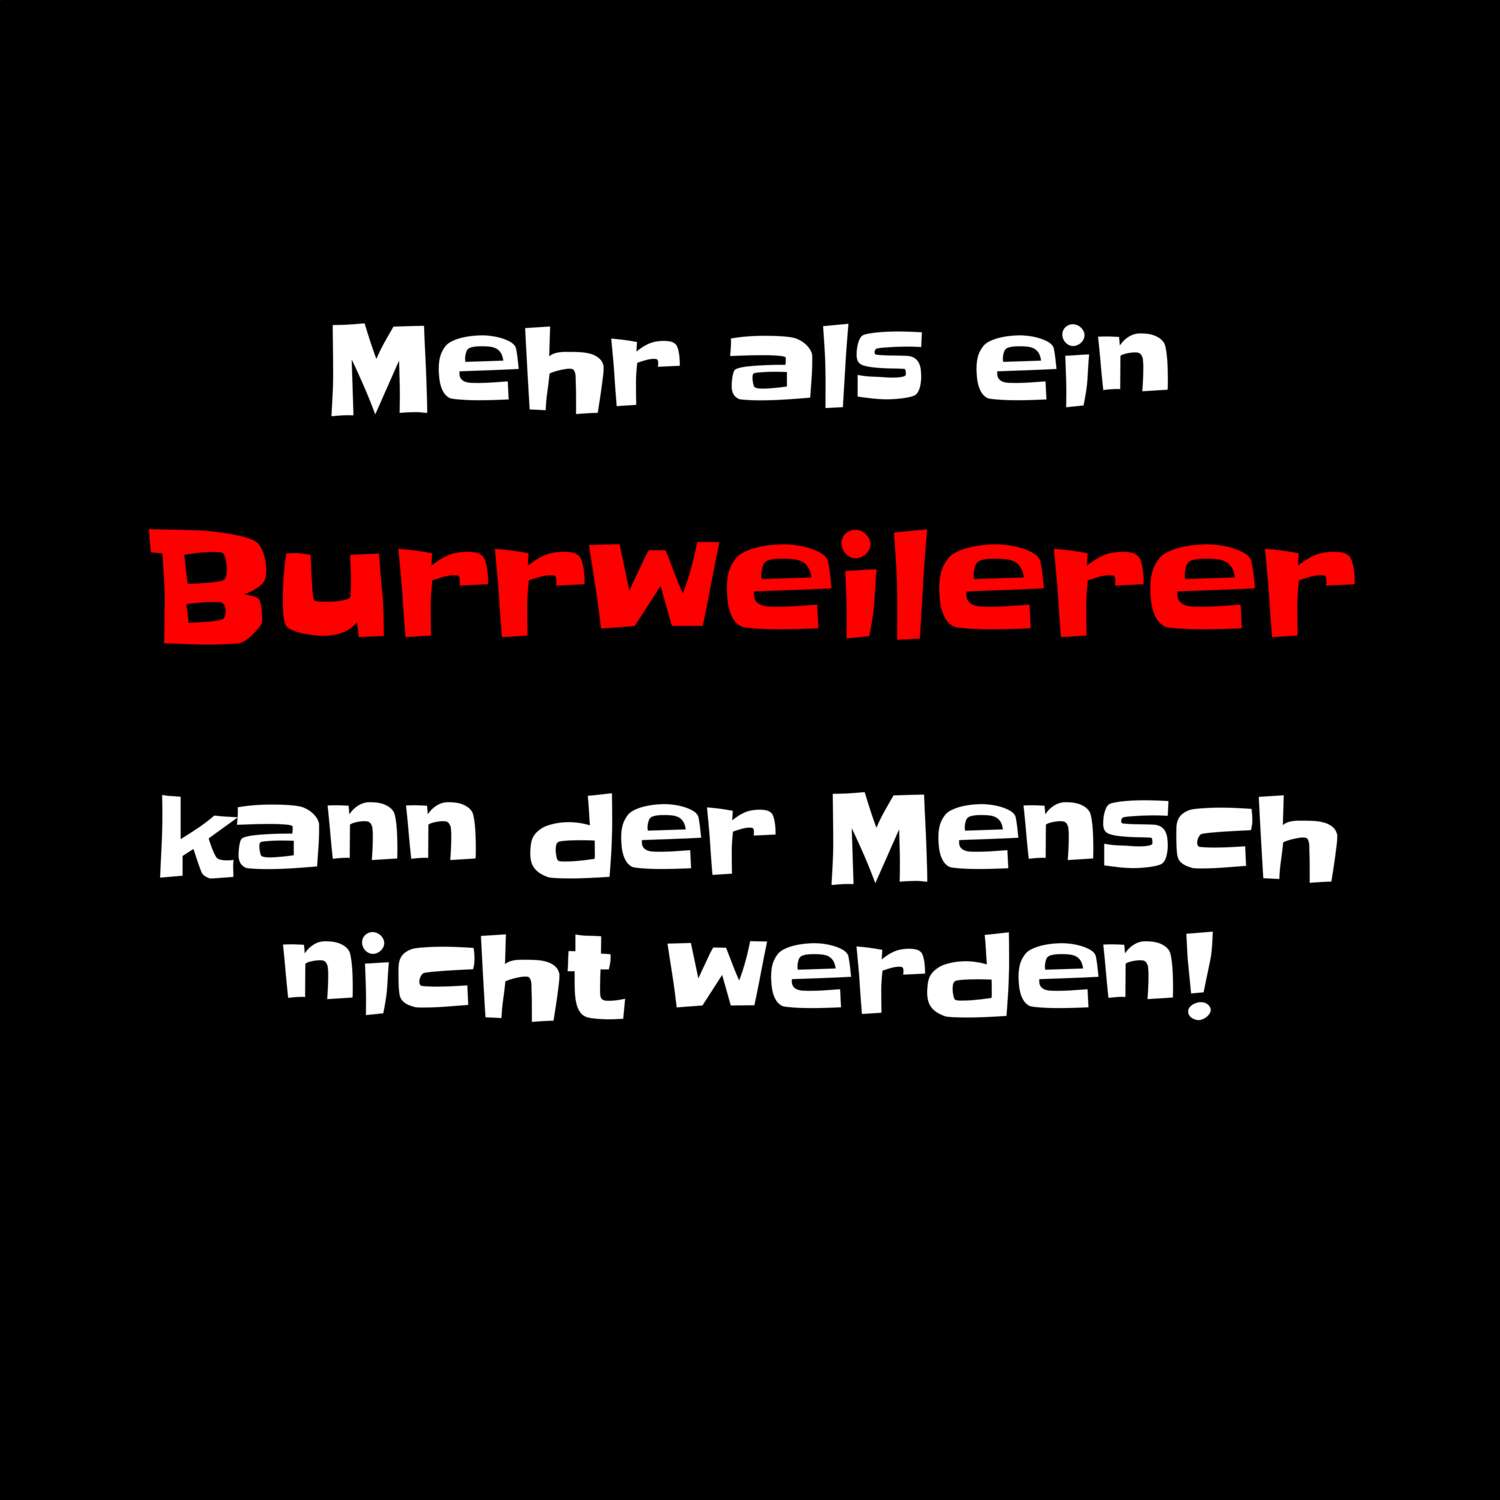 Burrweiler T-Shirt »Mehr als ein«